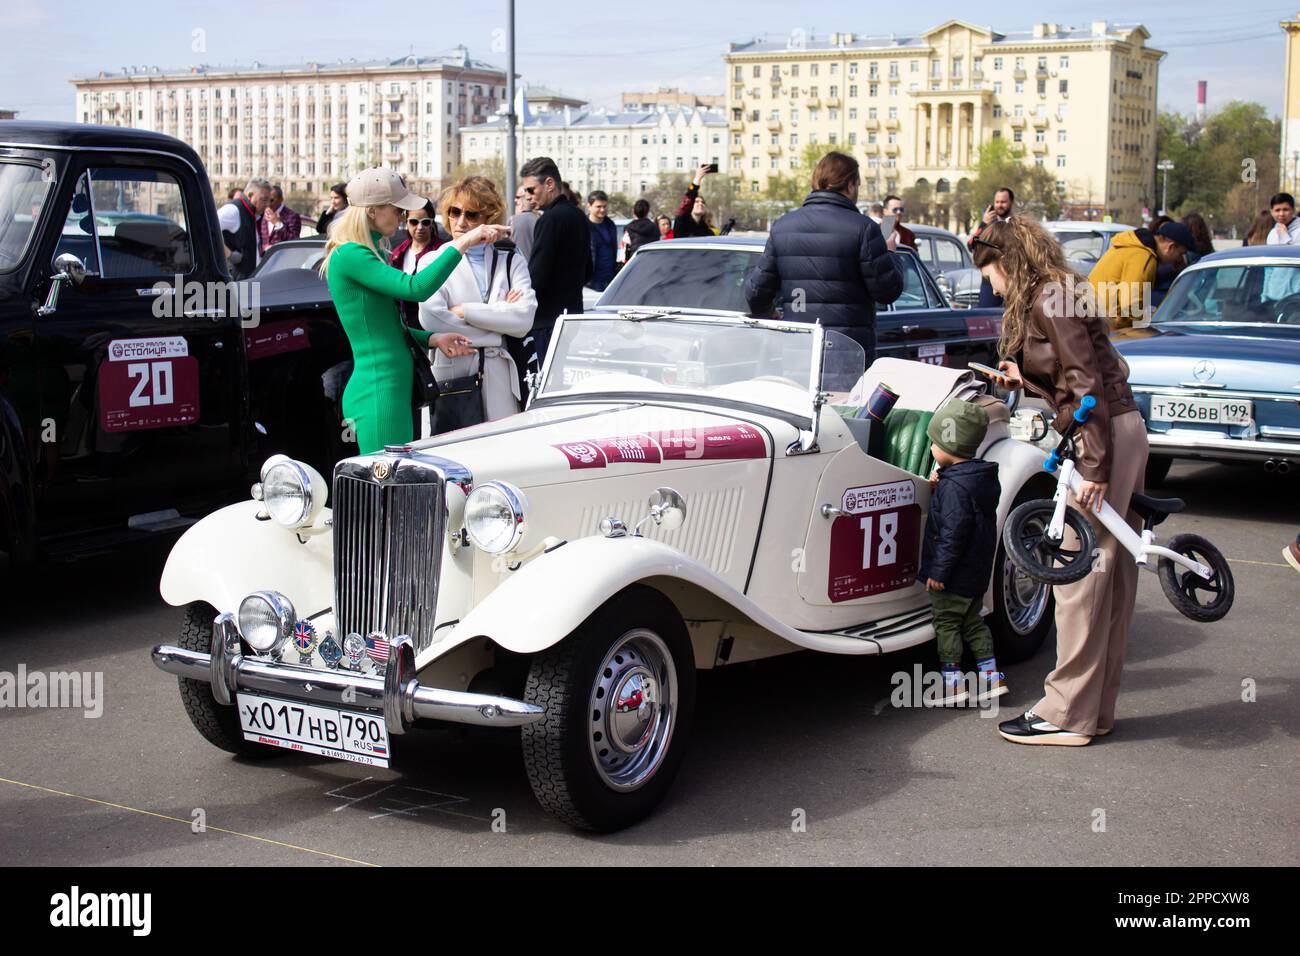 Les gens examinent une voiture rétro mg de fabrication britannique garée près du parc Gorky à Moscou. Plus d'une centaine de voitures rétro ont participé au rallye rétro 'Capital' (Stolitsa) 2023 à Moscou, en Russie. Cet événement ouvre une série de compétitions officielles de la saison 8th de la Fédération de l'automobile russe coupe en rallye avec des voitures classiques. Des marques soviétiques légendaires telles que « Volga », « Moskvich » et « Zhiguli », ainsi que des marques mondialement connues telles que Rolls Royce, Bentley, Mercedes, Porsche, Jaguar, et d'autres. (Photo de Vlad Karkov/SOPA Images/Sipa USA) Banque D'Images